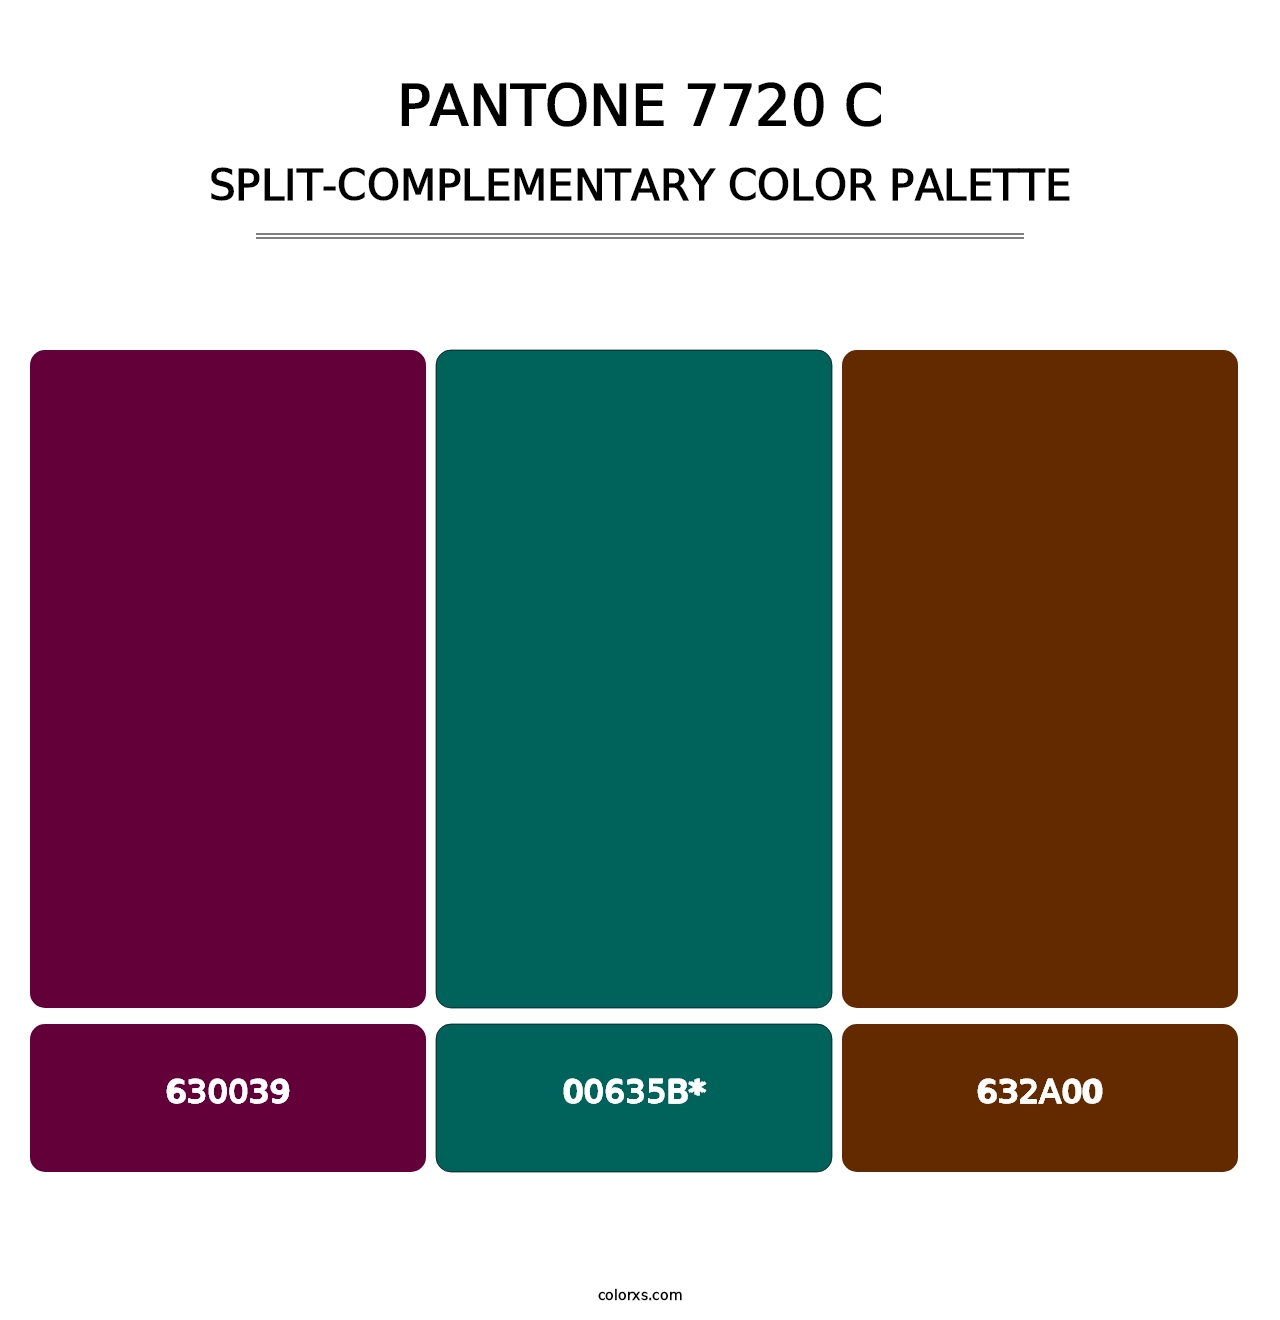 PANTONE 7720 C - Split-Complementary Color Palette